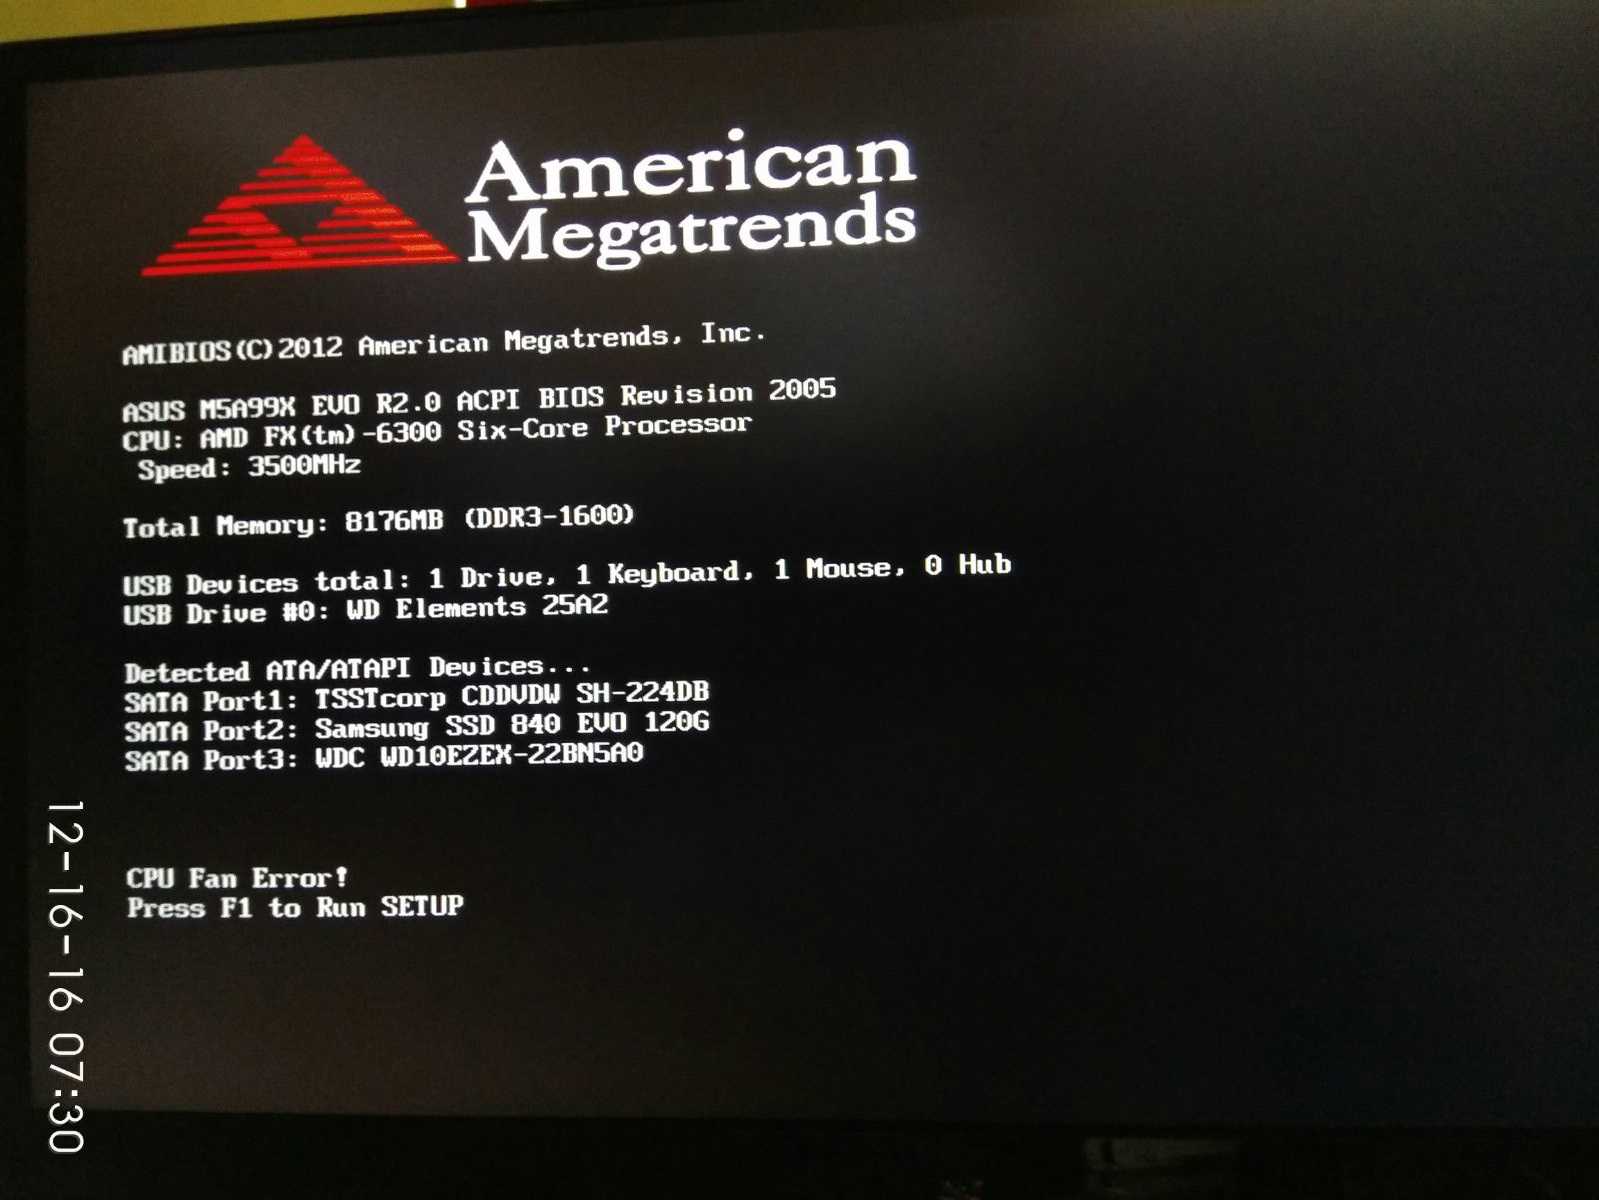 Error press f1. Биос CPU Fan Error. American MEGATRENDS CPU Fan Error. Ошибка CPU при запуске компьютера. Экран American MEGATRENDS.